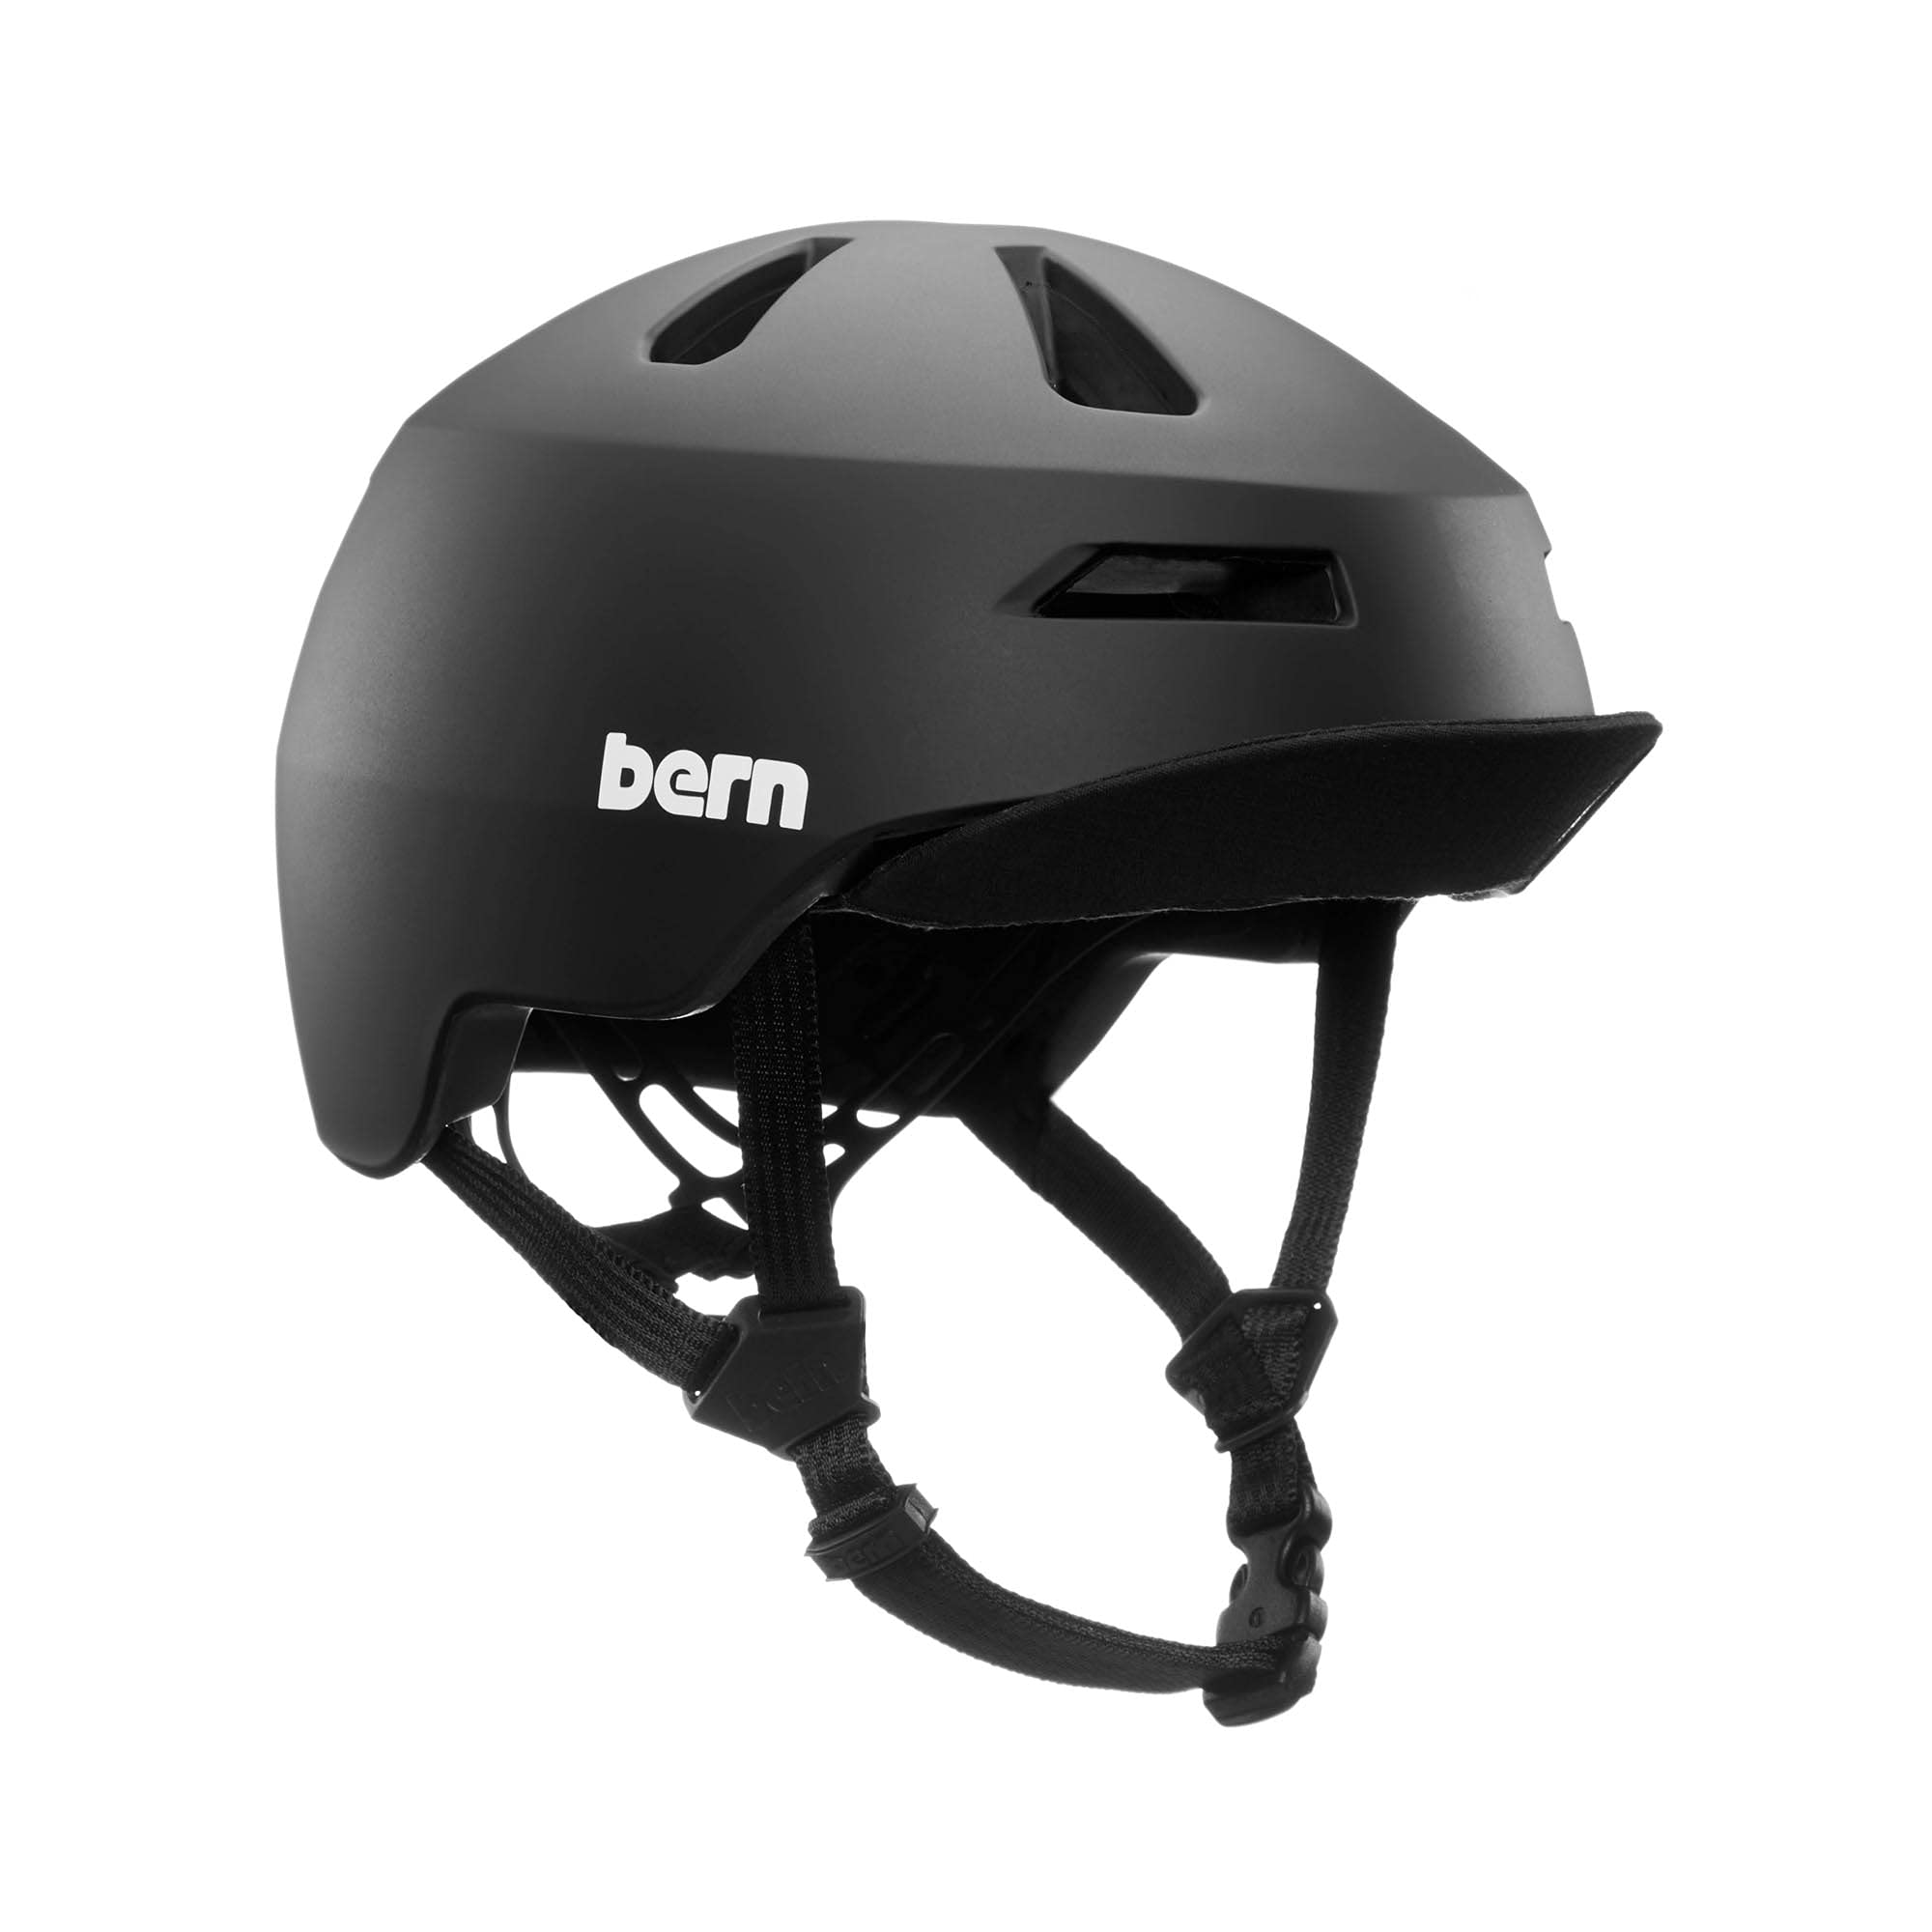 Bern Unisex, Jugendliche NINO 2.0 Fahrrad Helm, Matte Black, M